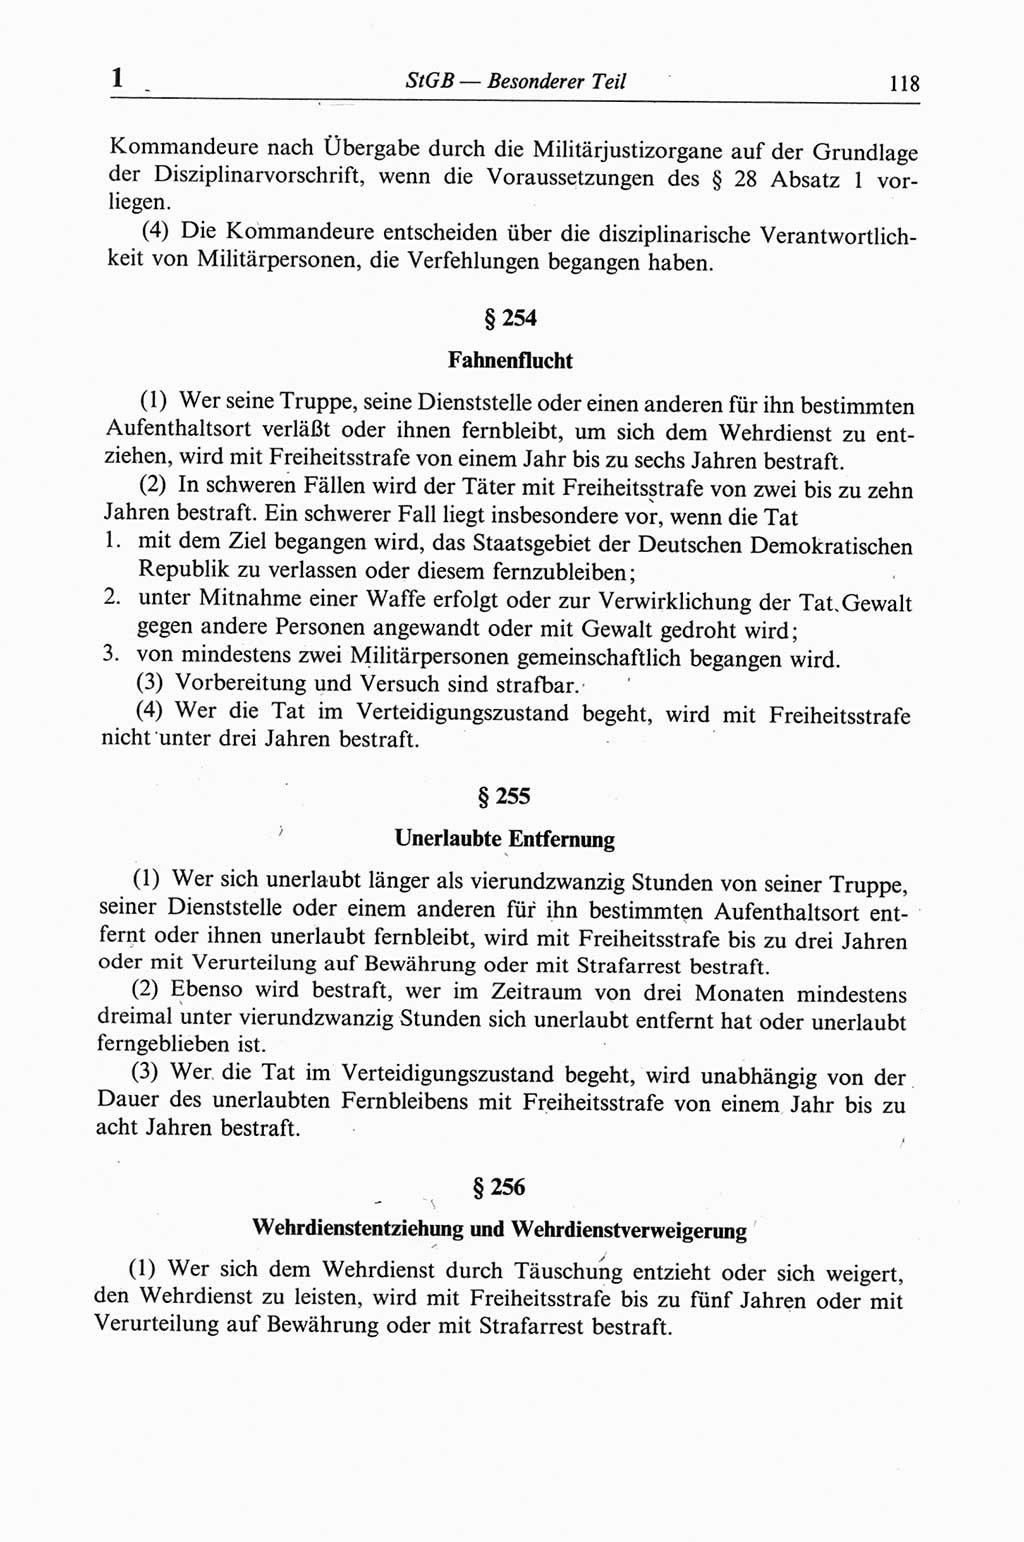 Strafgesetzbuch (StGB) der Deutschen Demokratischen Republik (DDR) und angrenzende Gesetze und Bestimmungen 1968, Seite 118 (StGB Ges. Best. DDR 1968, S. 118)